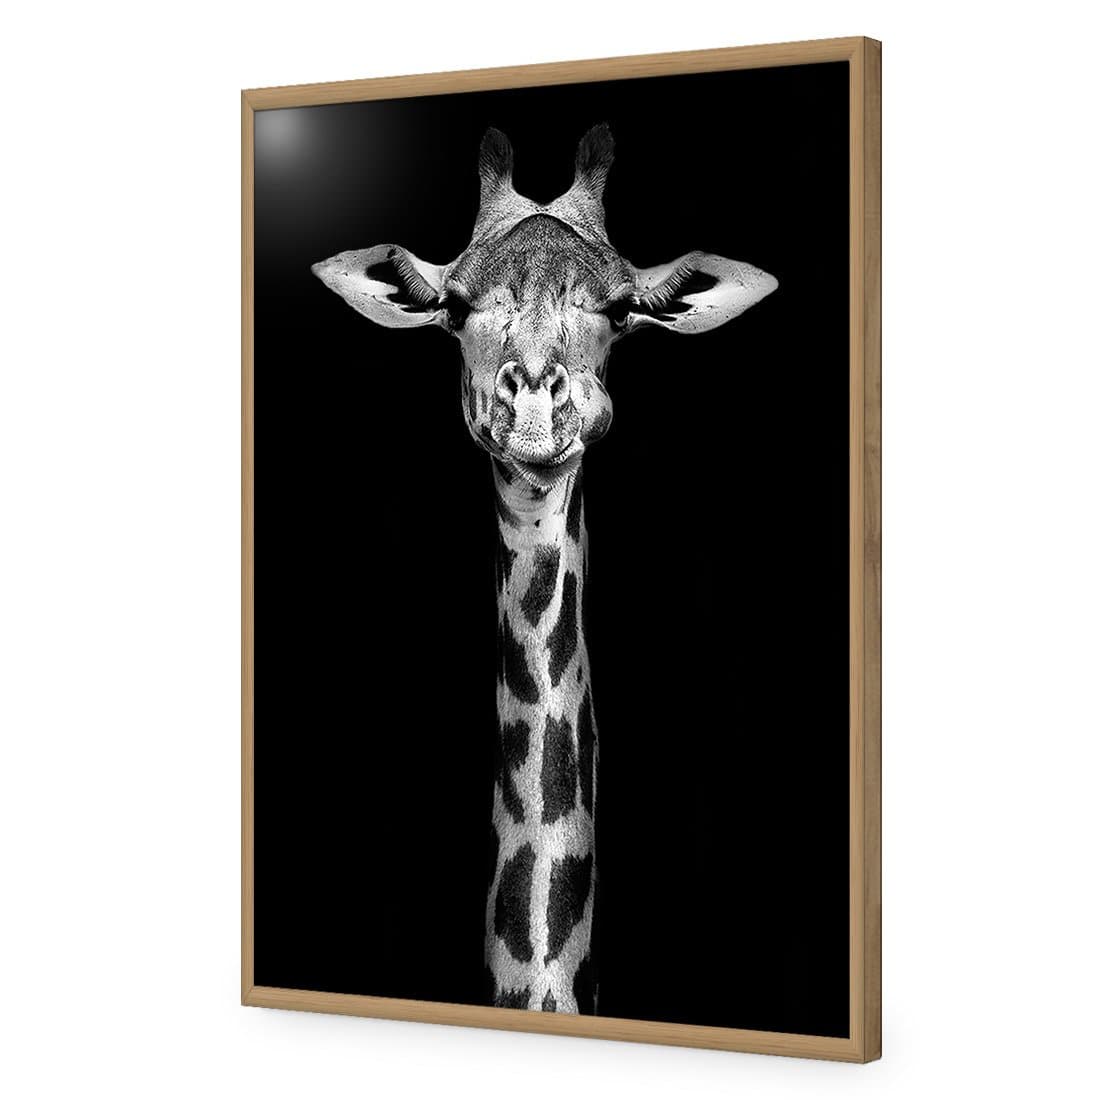 Thornycroft Giraffe-Acrylic-Wall Art Design-Without Border-Acrylic - Oak Frame-45x30cm-Wall Art Designs